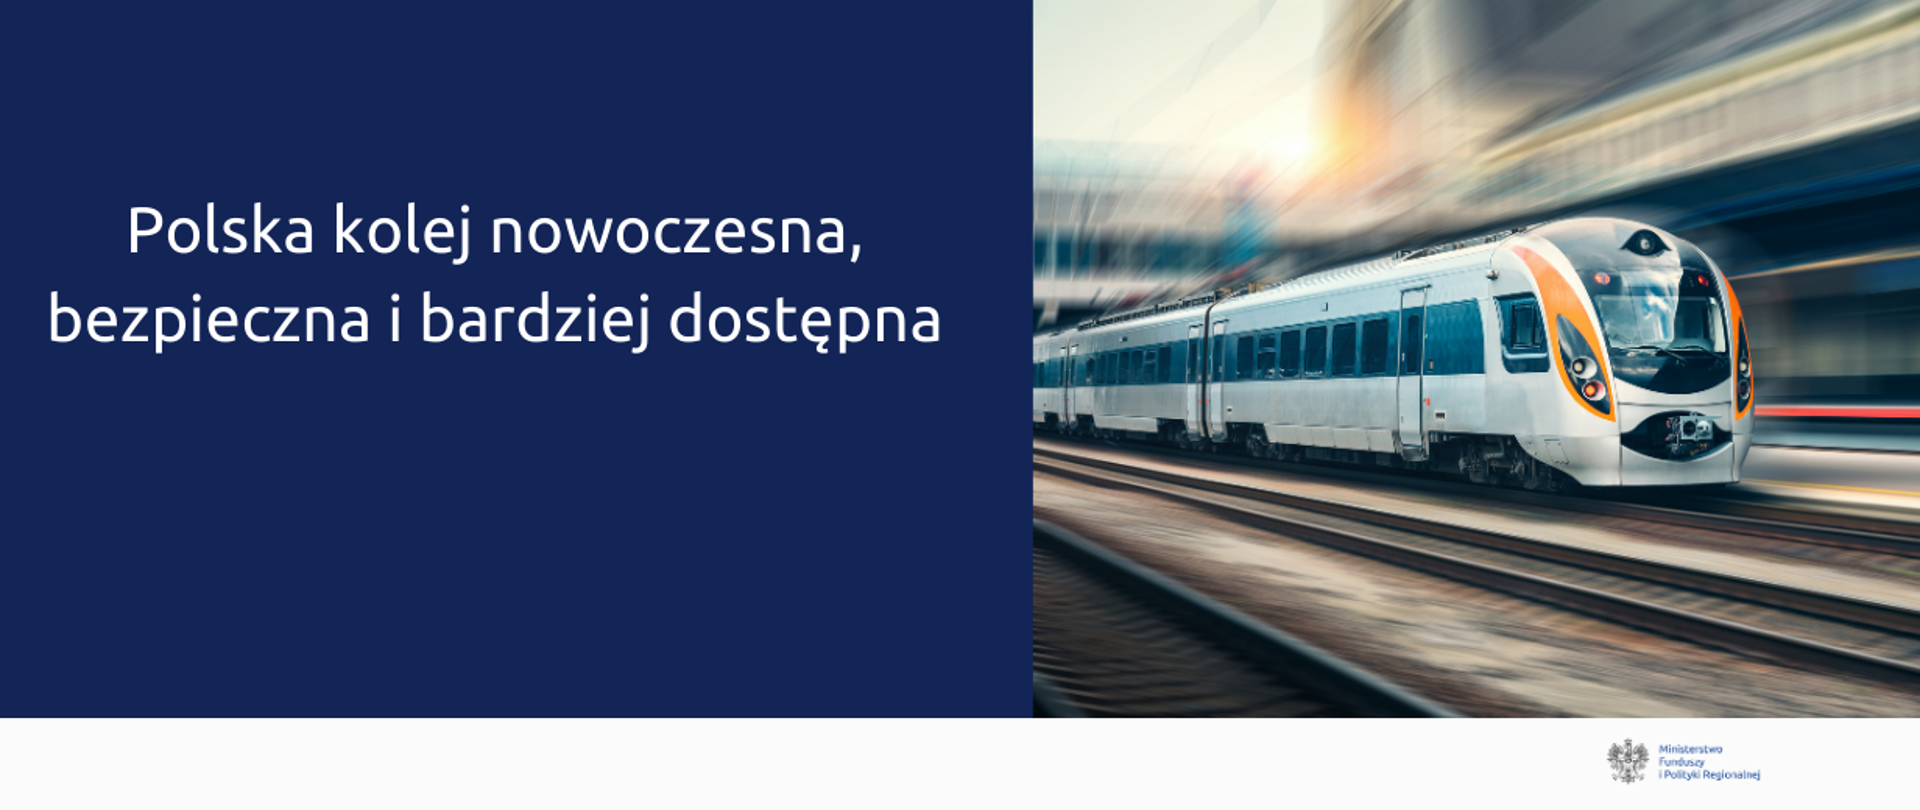 Grafika podzielona na dwie części: po lewej napis: Polska kolej nowoczesna, bezpieczna i bardziej dostępna, po prawej zdjęcie pędzącego pociągu.